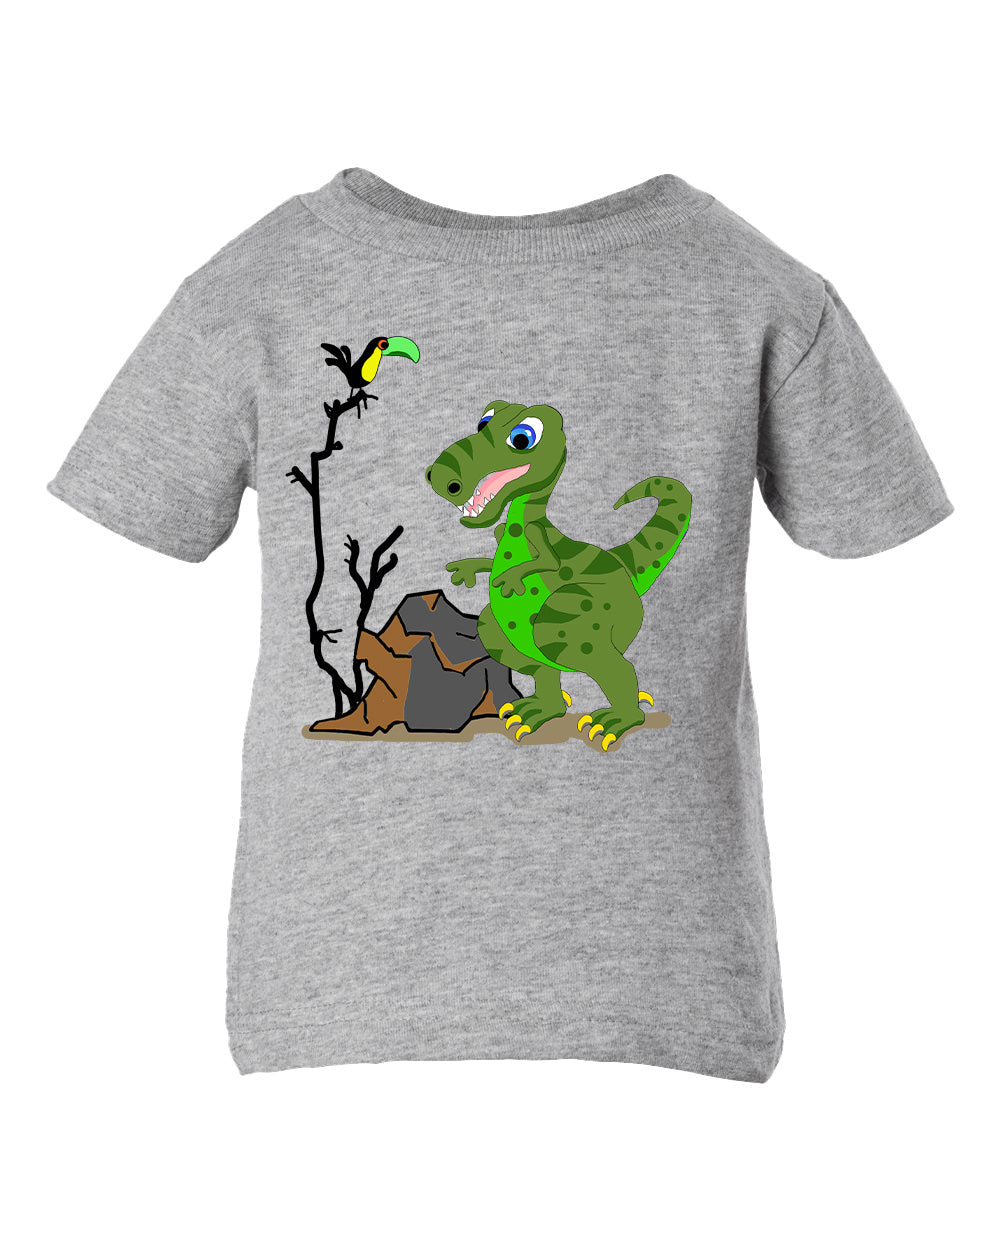 T-Rex Toddler T-shirt